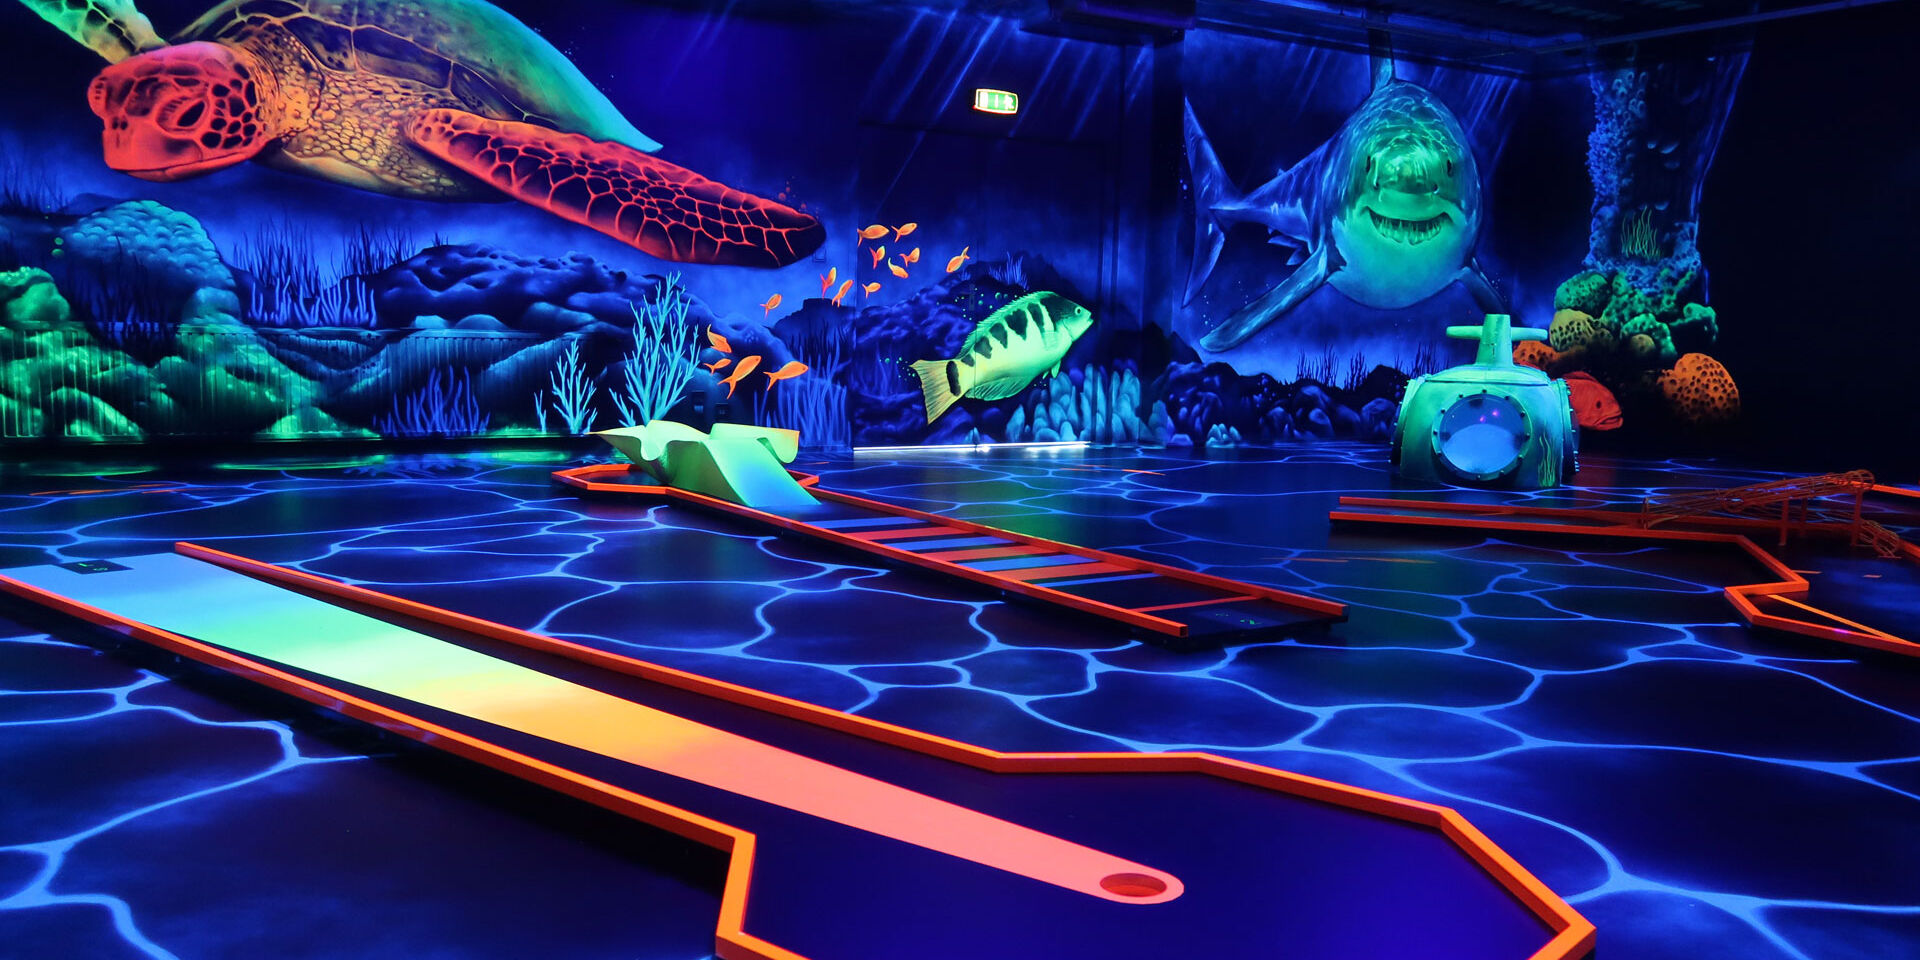 Indoor minigolfbaan met fluoriscerende verlichting en versiering alsof je onder water bent met haaien en schildpadden bij Van der Ende Racing Inn in het Westland